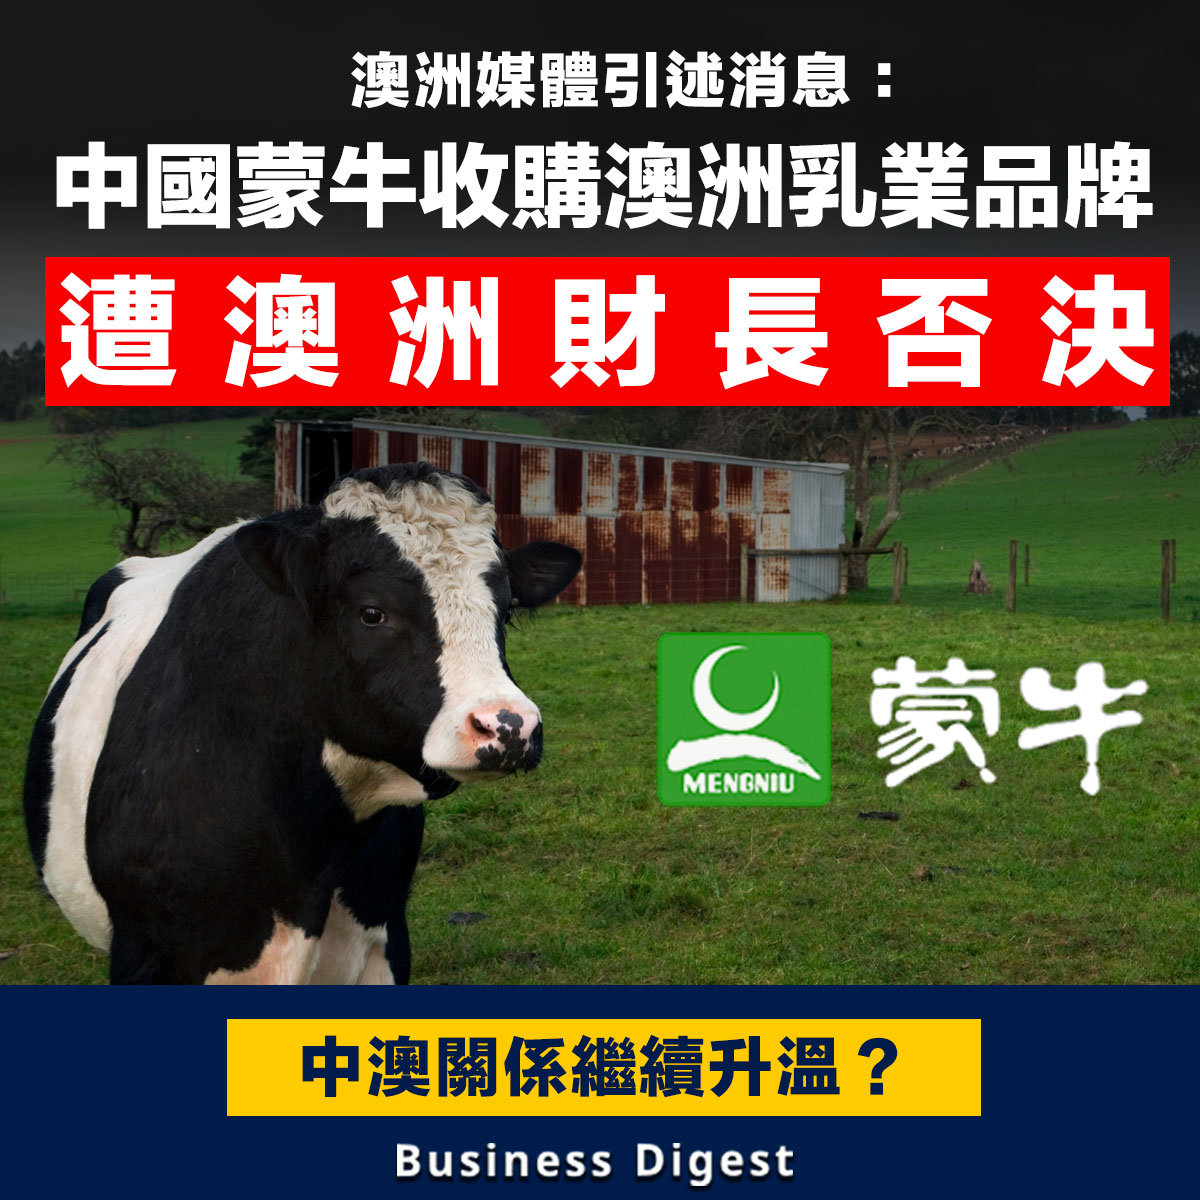 【商業熱話】中國蒙牛收購澳洲乳業品牌，傳遭澳洲財長否決